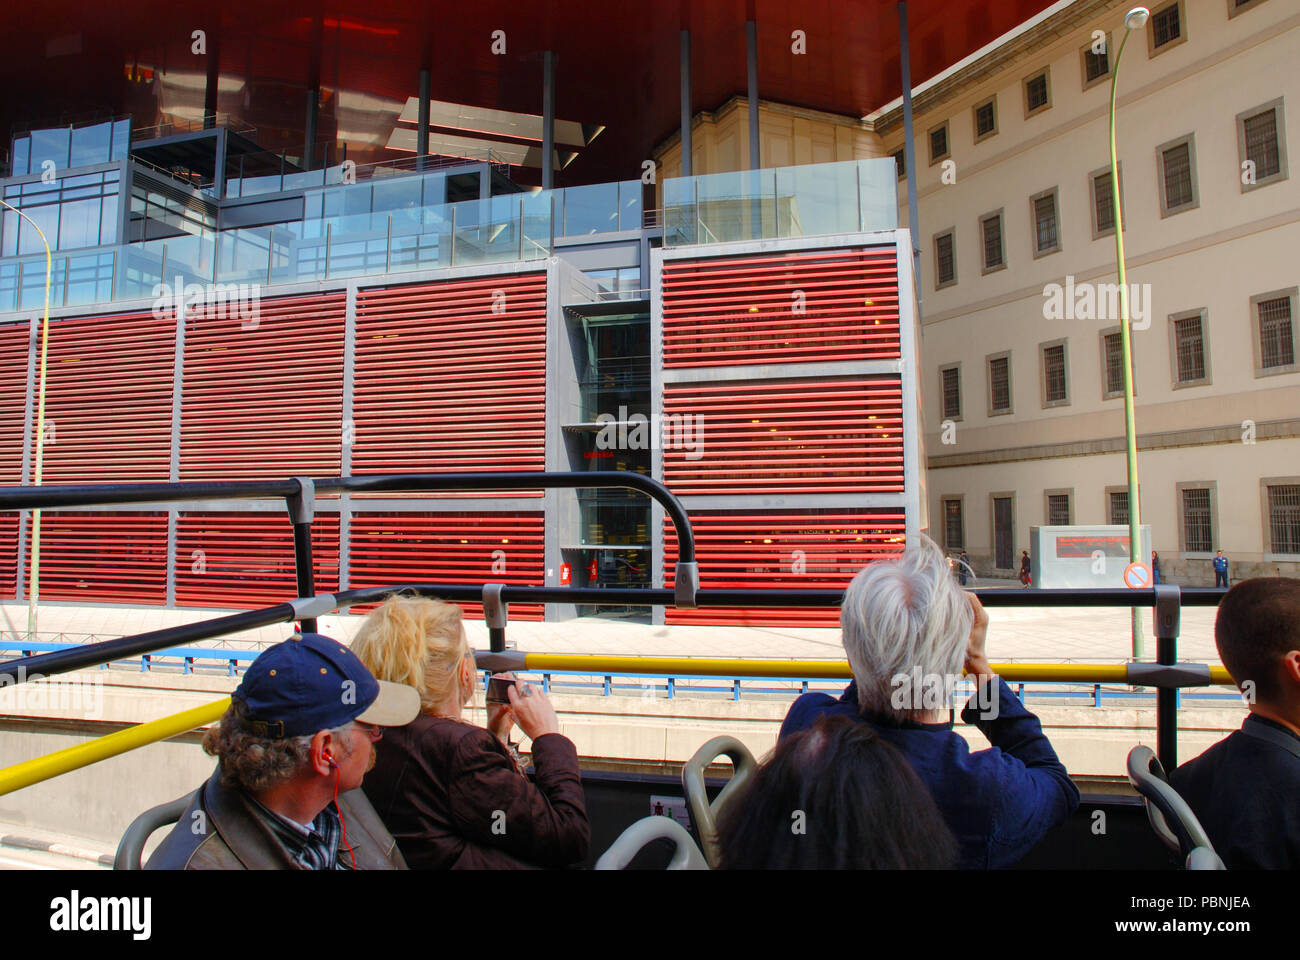 Centro de Arte Reina Sofia National Museum viewed from a tourist bus. Madrid, Spain. Stock Photo